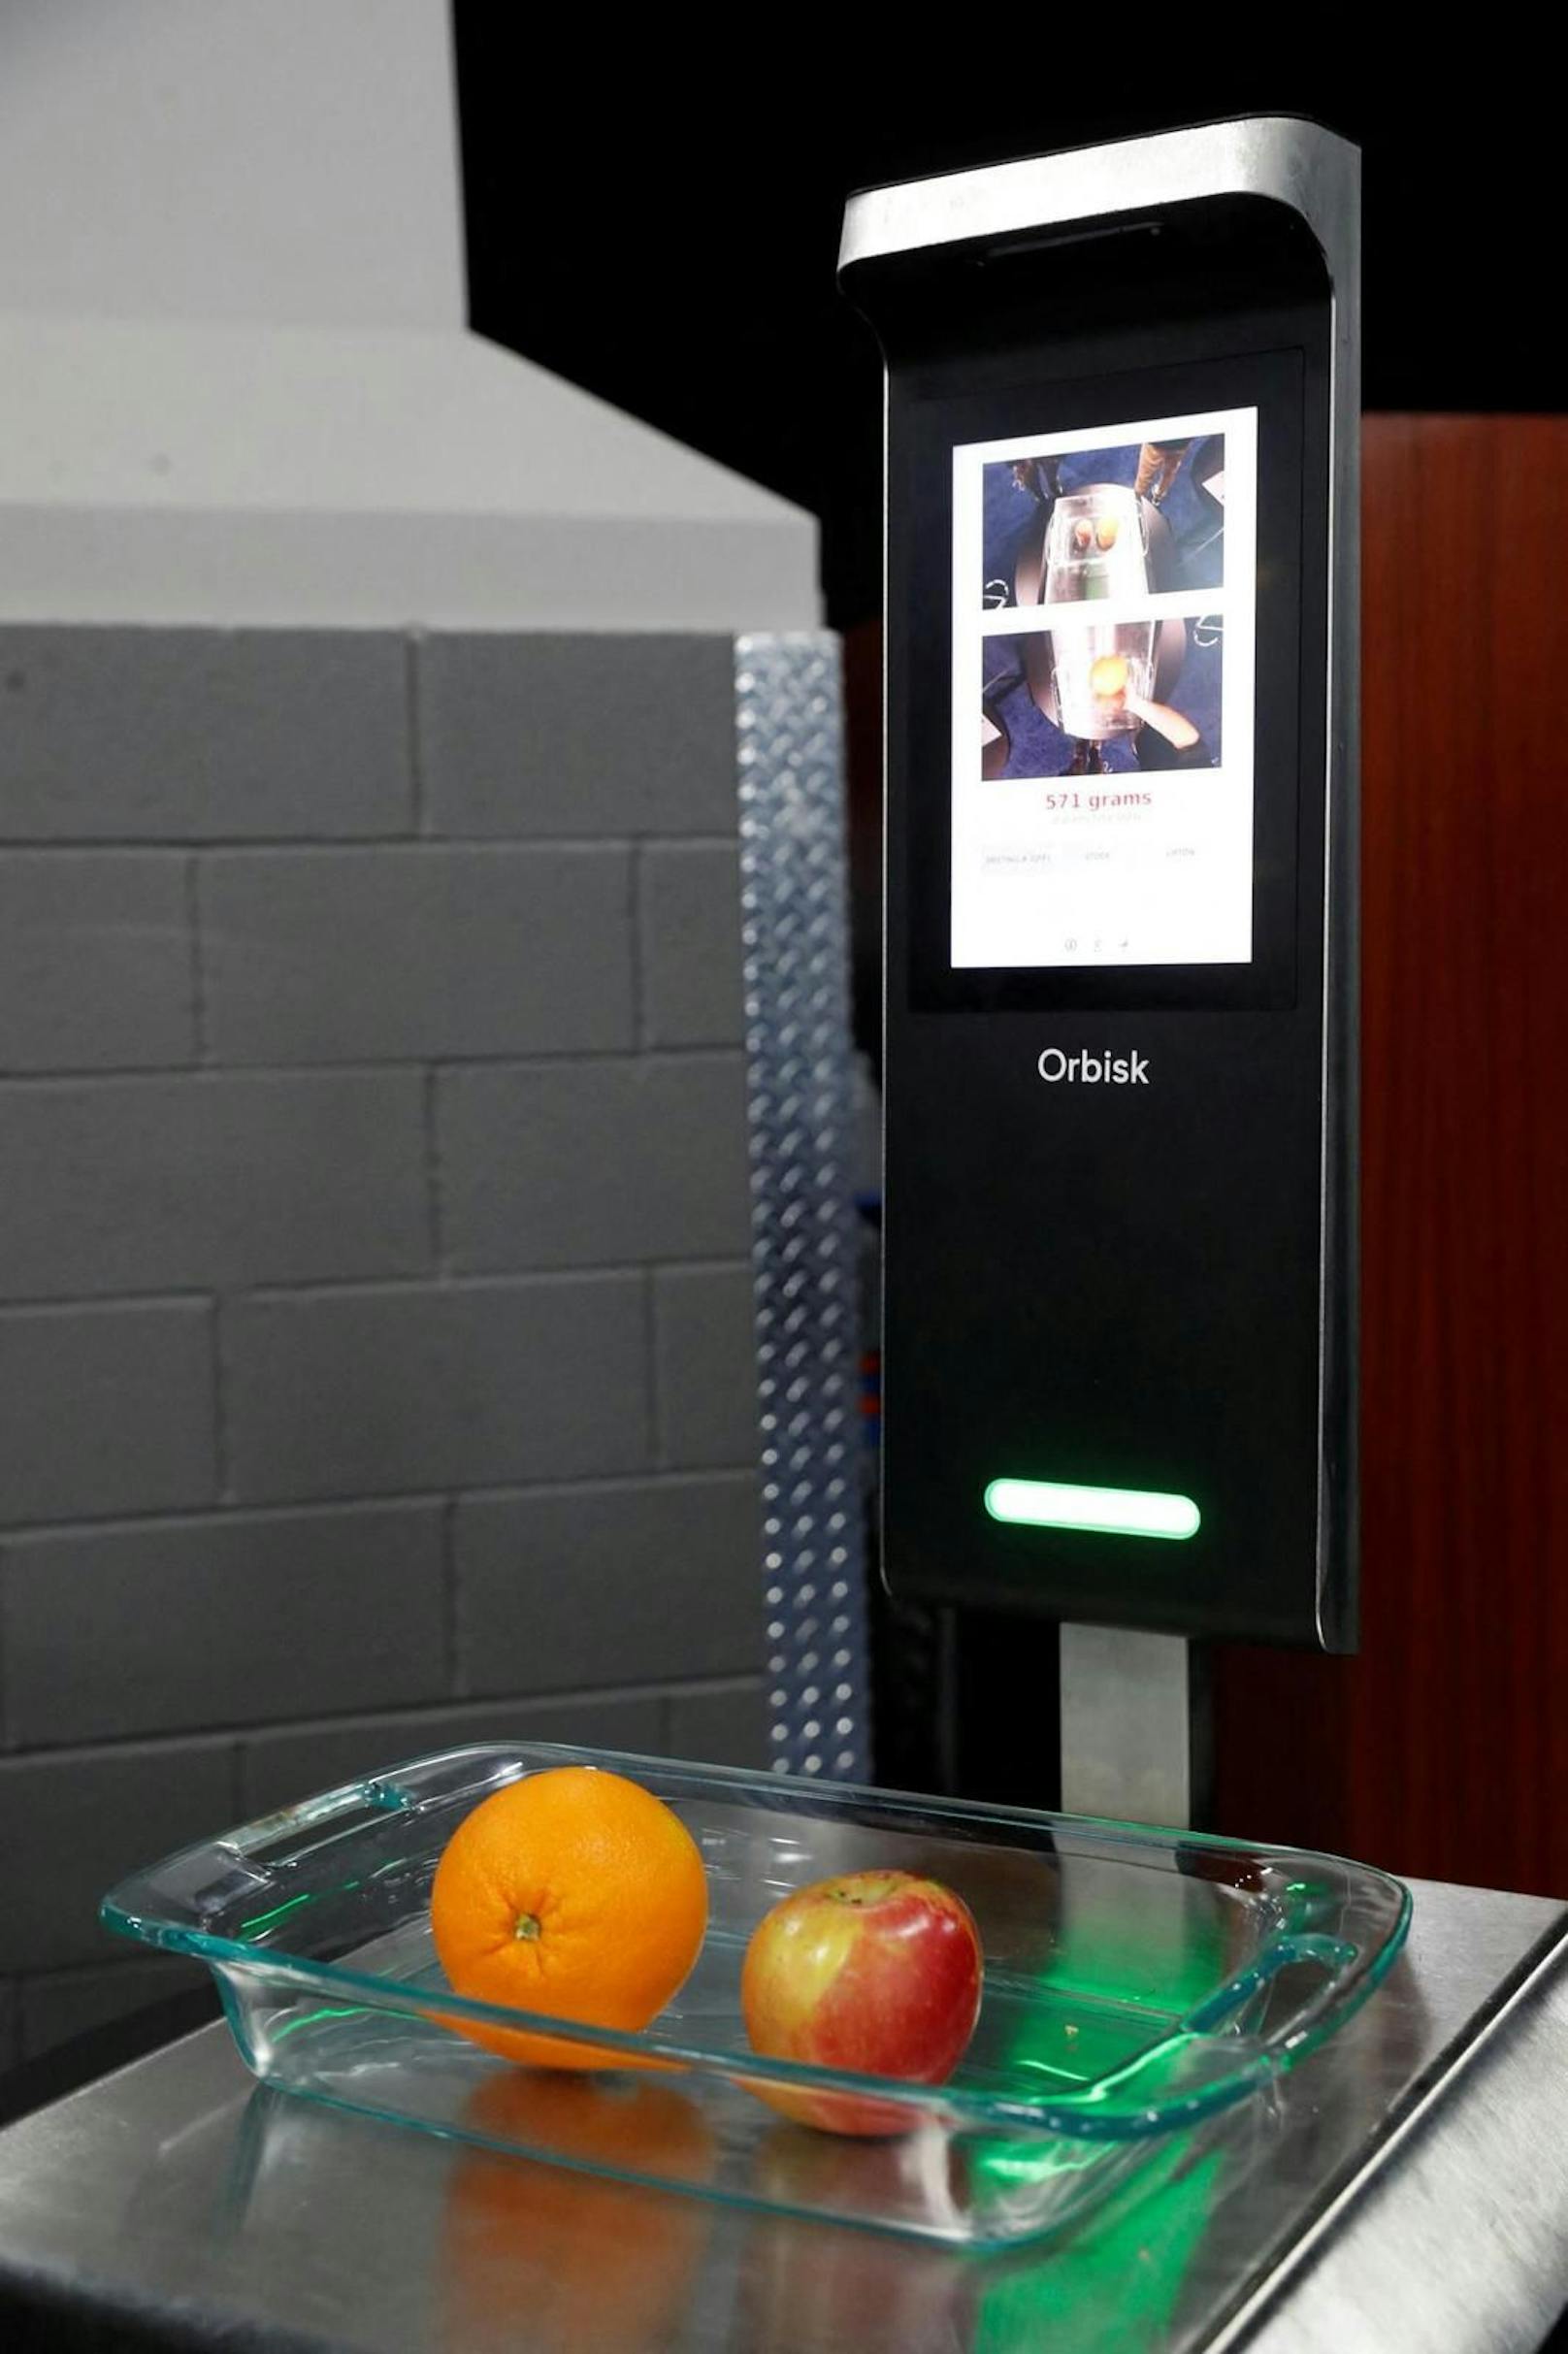 Der Orbisk-Food-Waste-Monitor soll zukünftig dabei helfen, weggeworfene Essensreste besser zu analysieren und auf längere Sicht hinweg der Verschwendung von Lebensmitteln vorzubeugen.